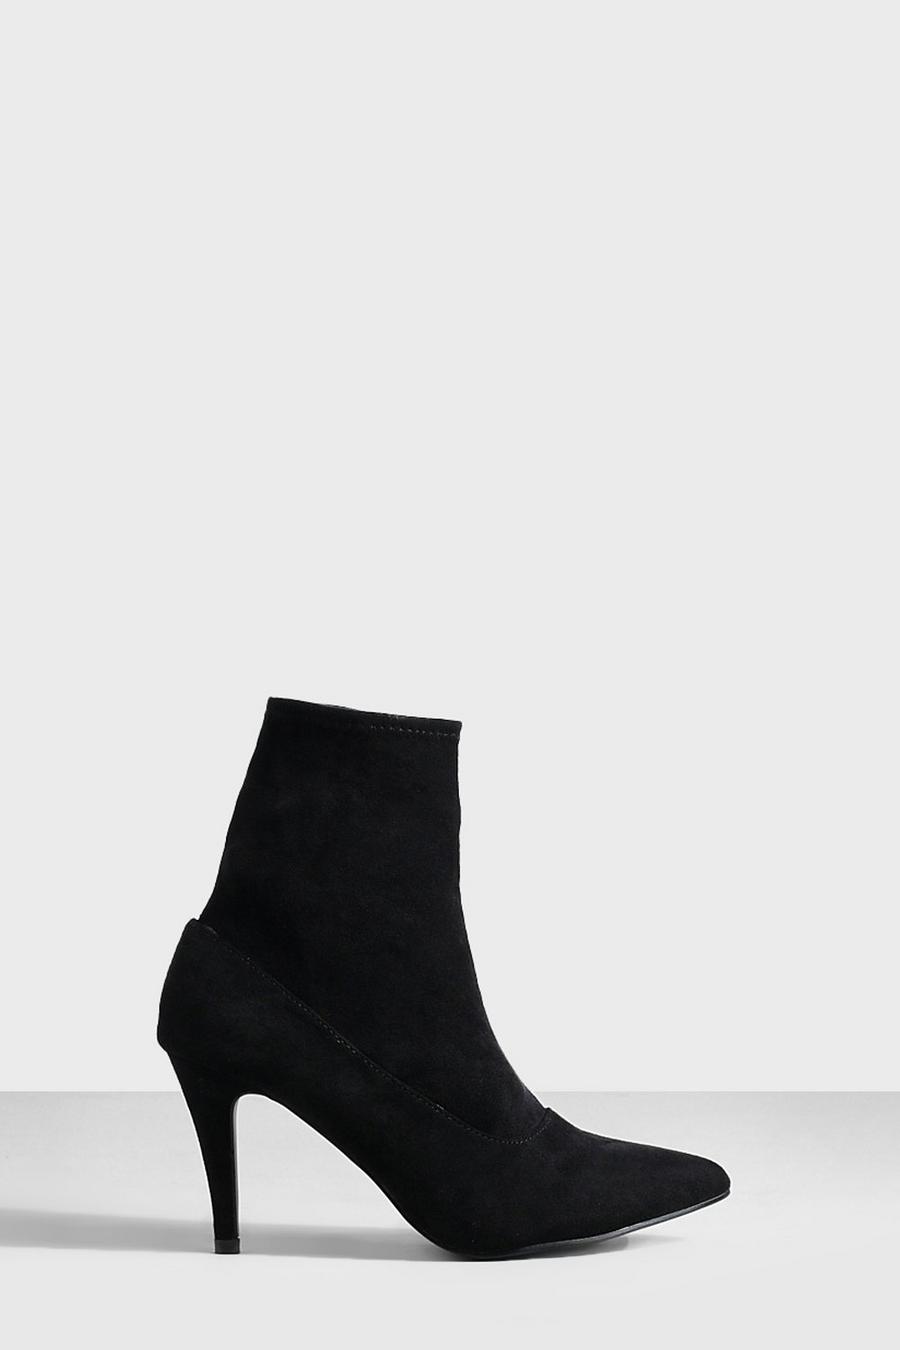 Botas calcetín de tacón de aguja básicas, Negro nero